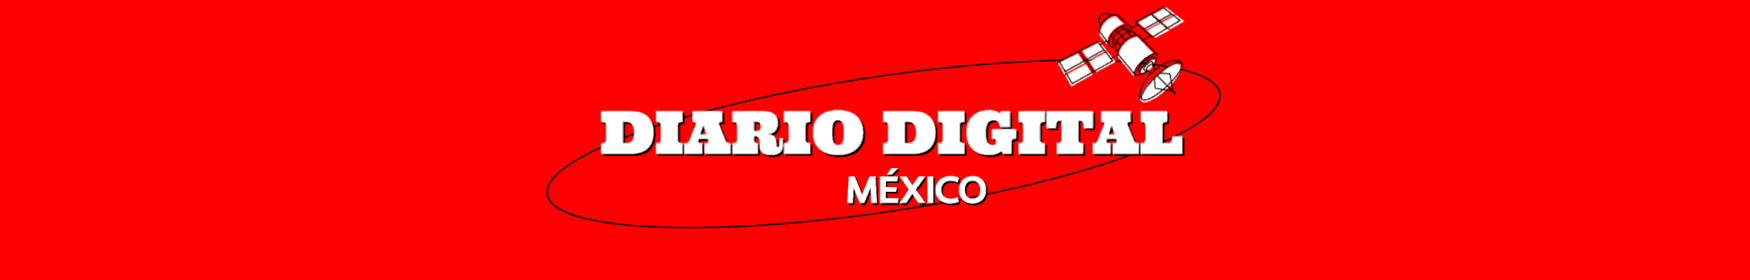 Diario Digital México